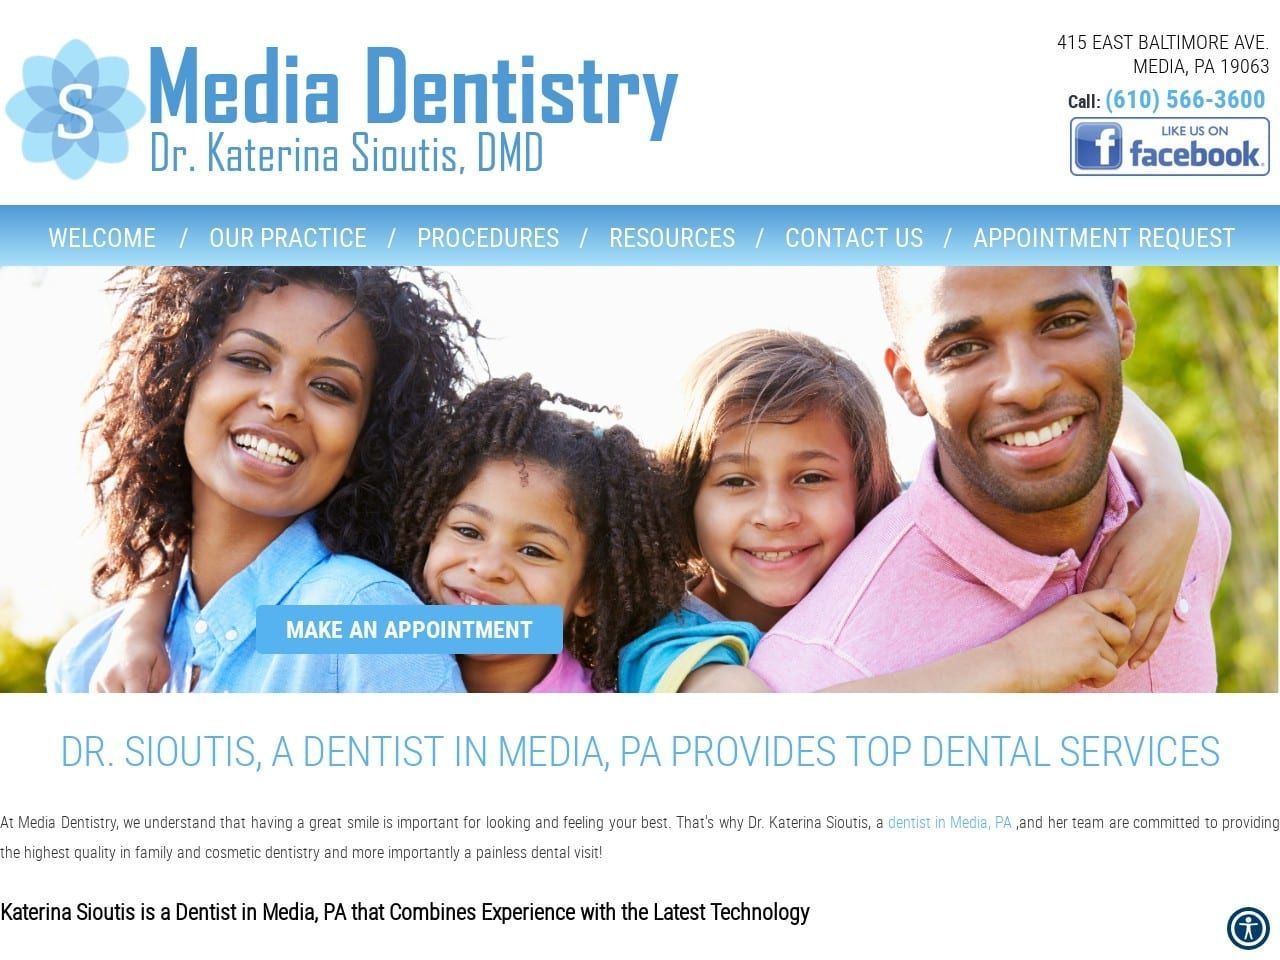 Media Dentistry Website Screenshot from mediadentistry.com